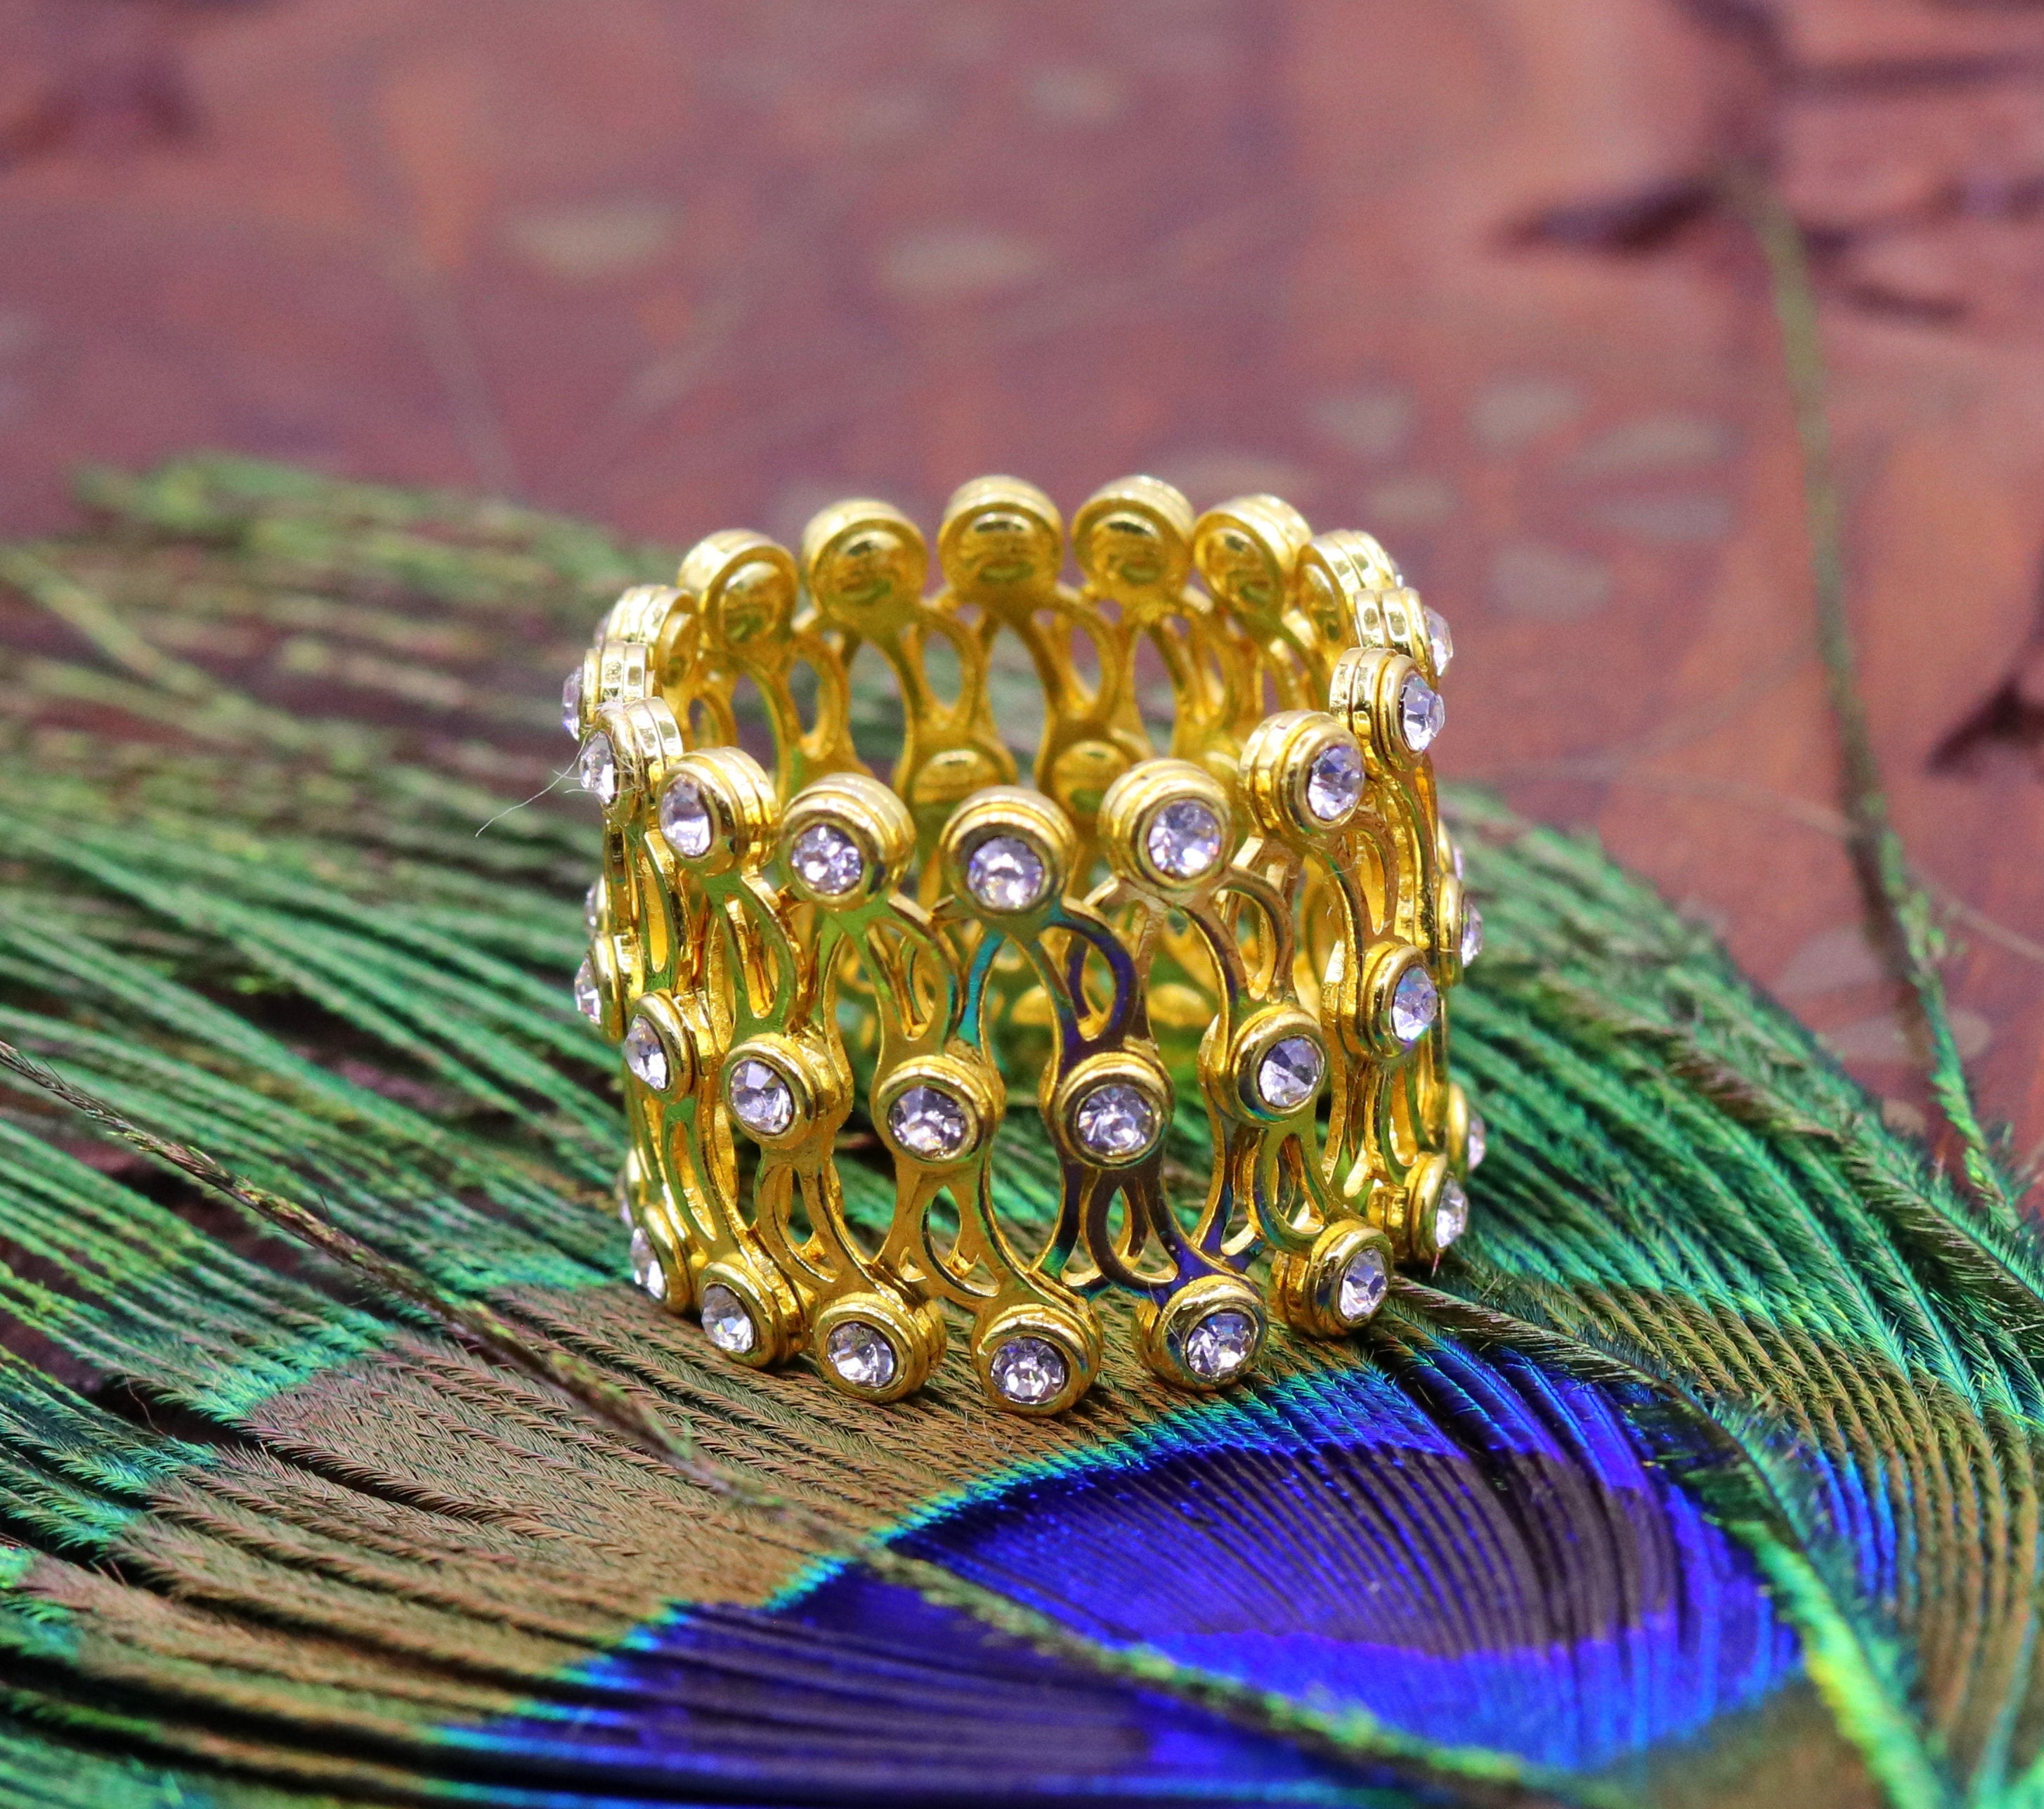 Vaschieri 18 Karat White Gold Expanding Ring Bangle Bracelet | eBay